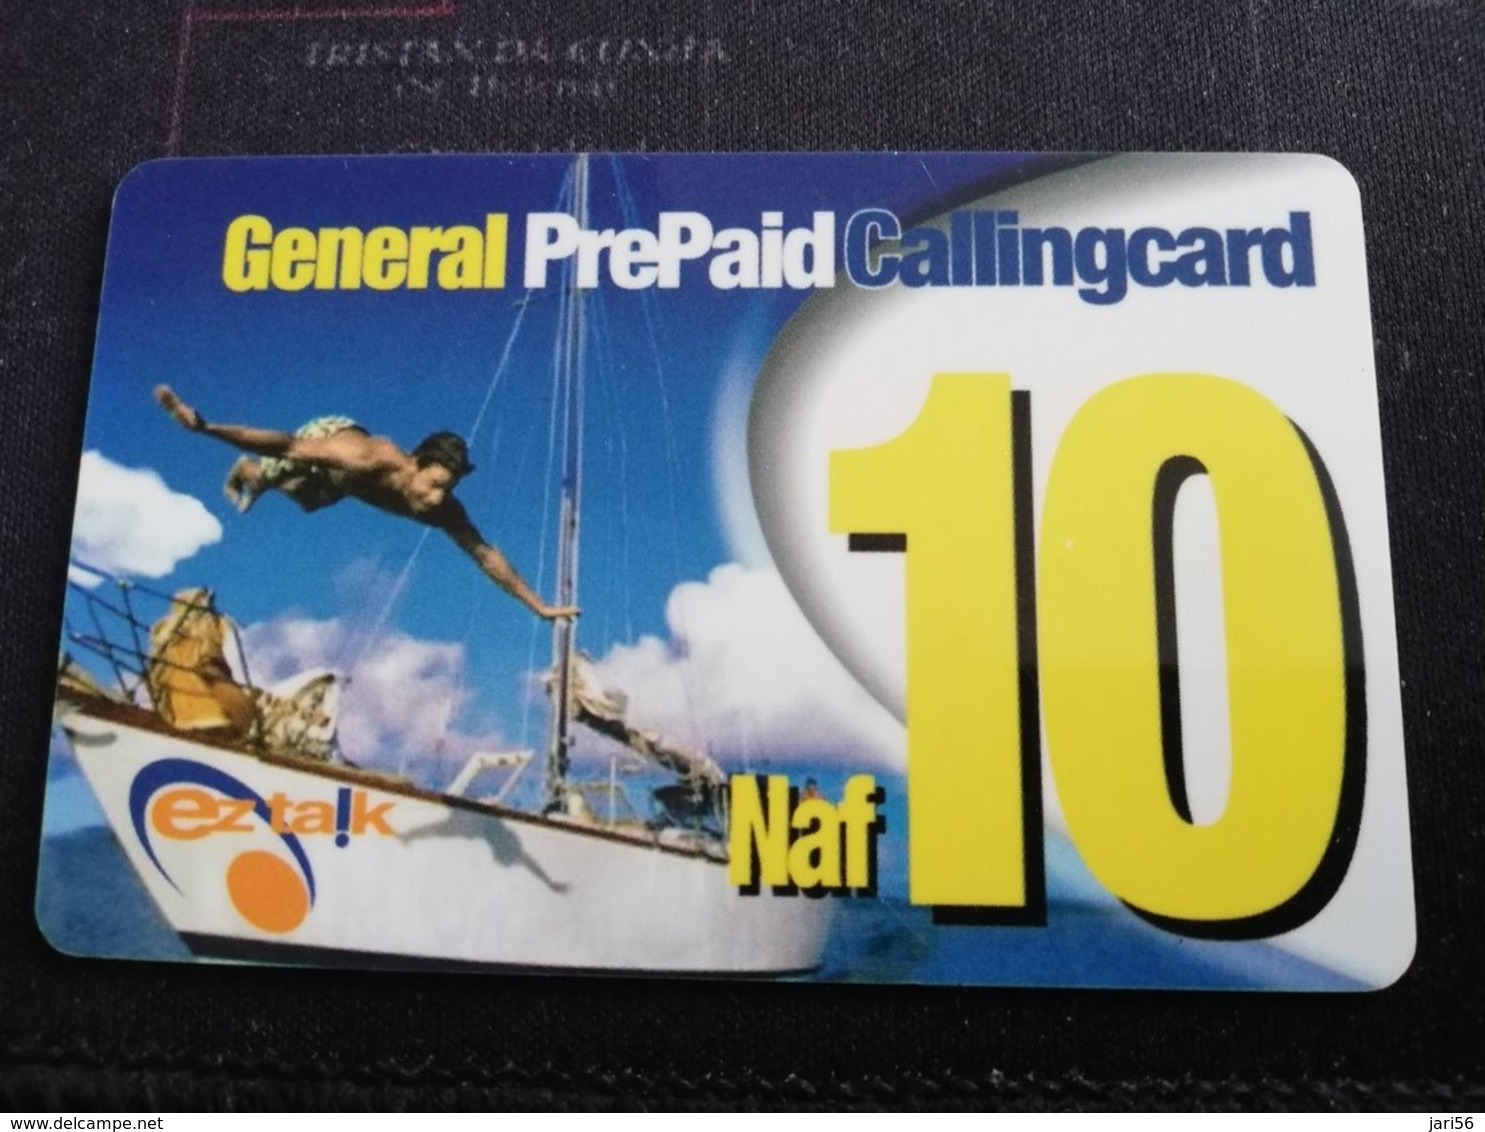 CURACAO NAF 10  GENERAL PREPAID CALLINGCARD, EZ TALK  THICK CARD     ** 957** - Antille (Olandesi)